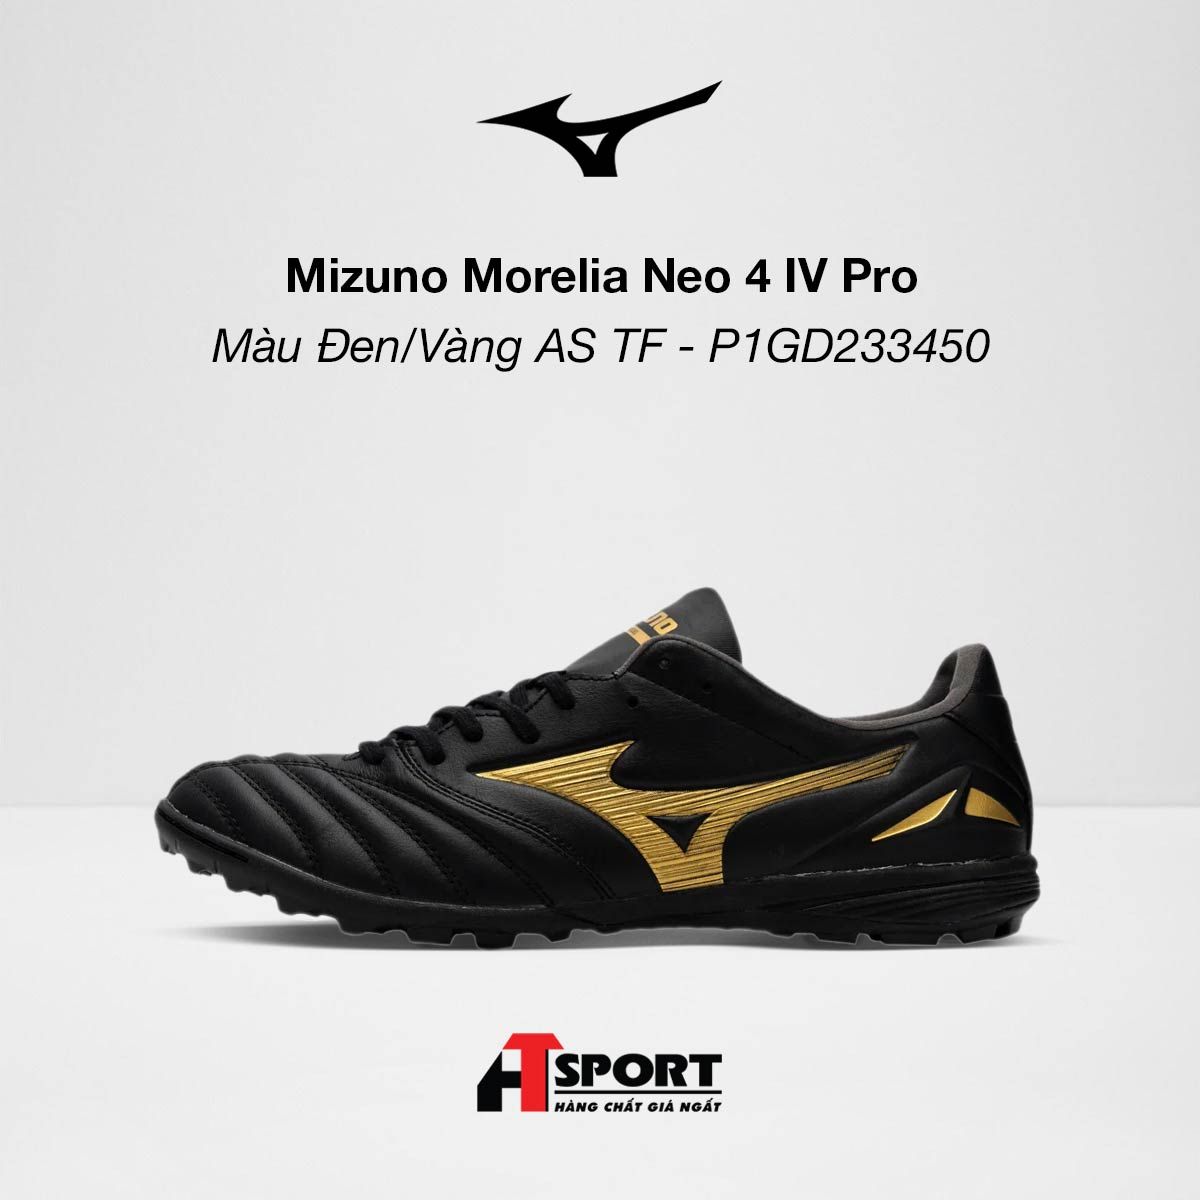  Mizuno Morelia Neo 4 IV Pro Màu Đen/Vàng AS TF - P1GD233450 